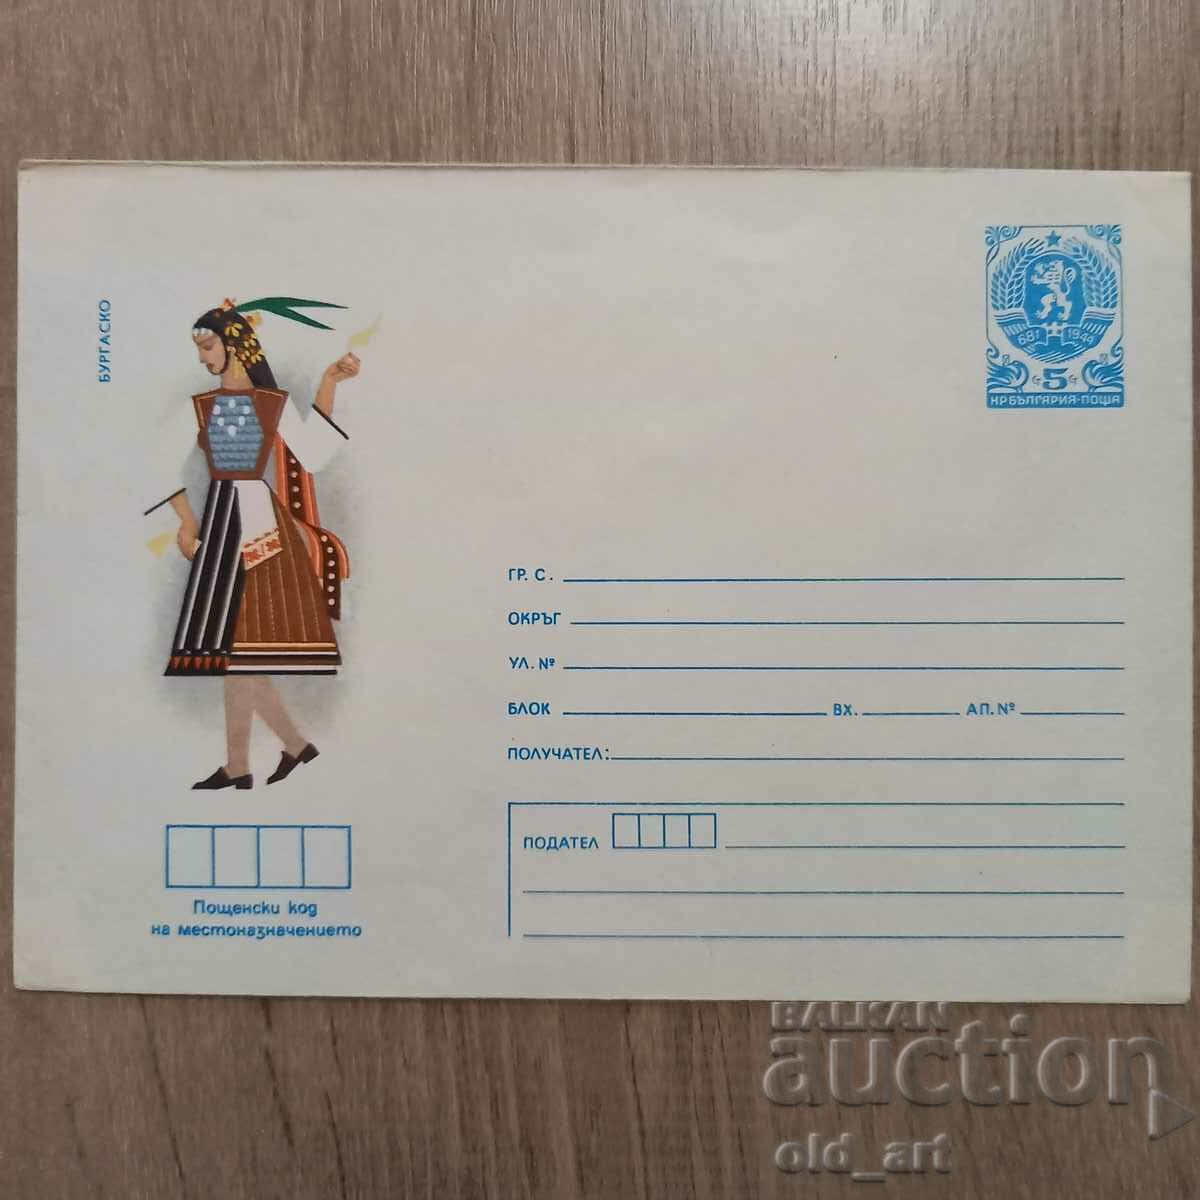 Postal envelope - Folk costumes - Burgas